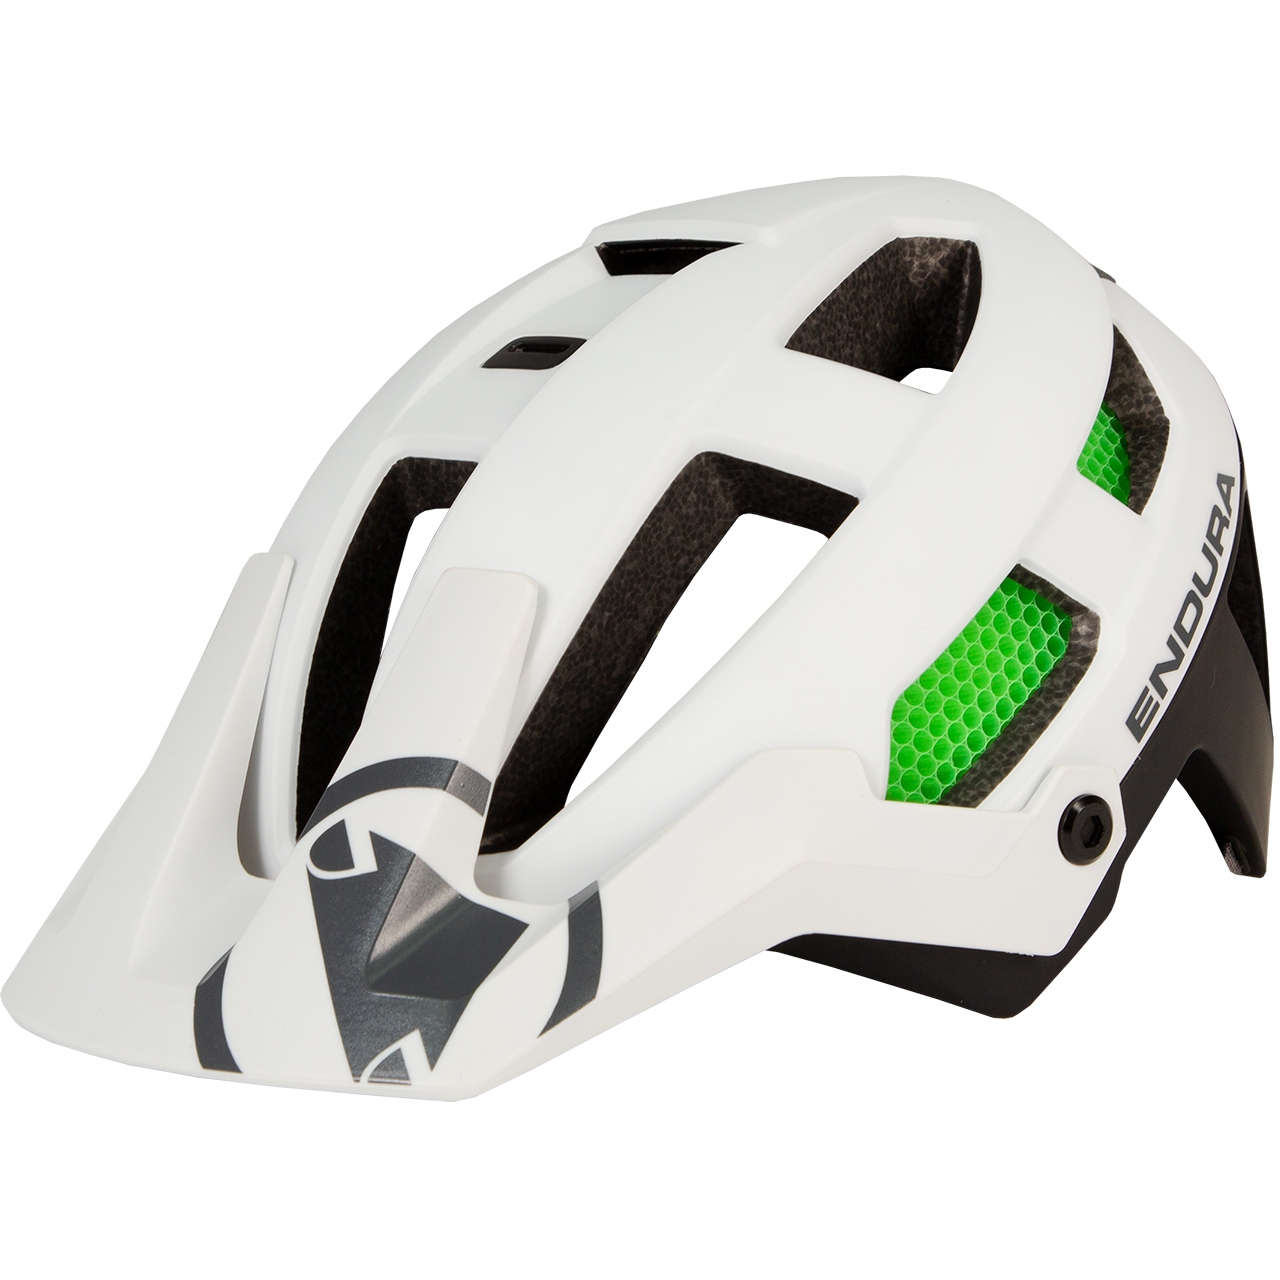 Produktbild von Endura SingleTrack MIPS® Helm - weiß